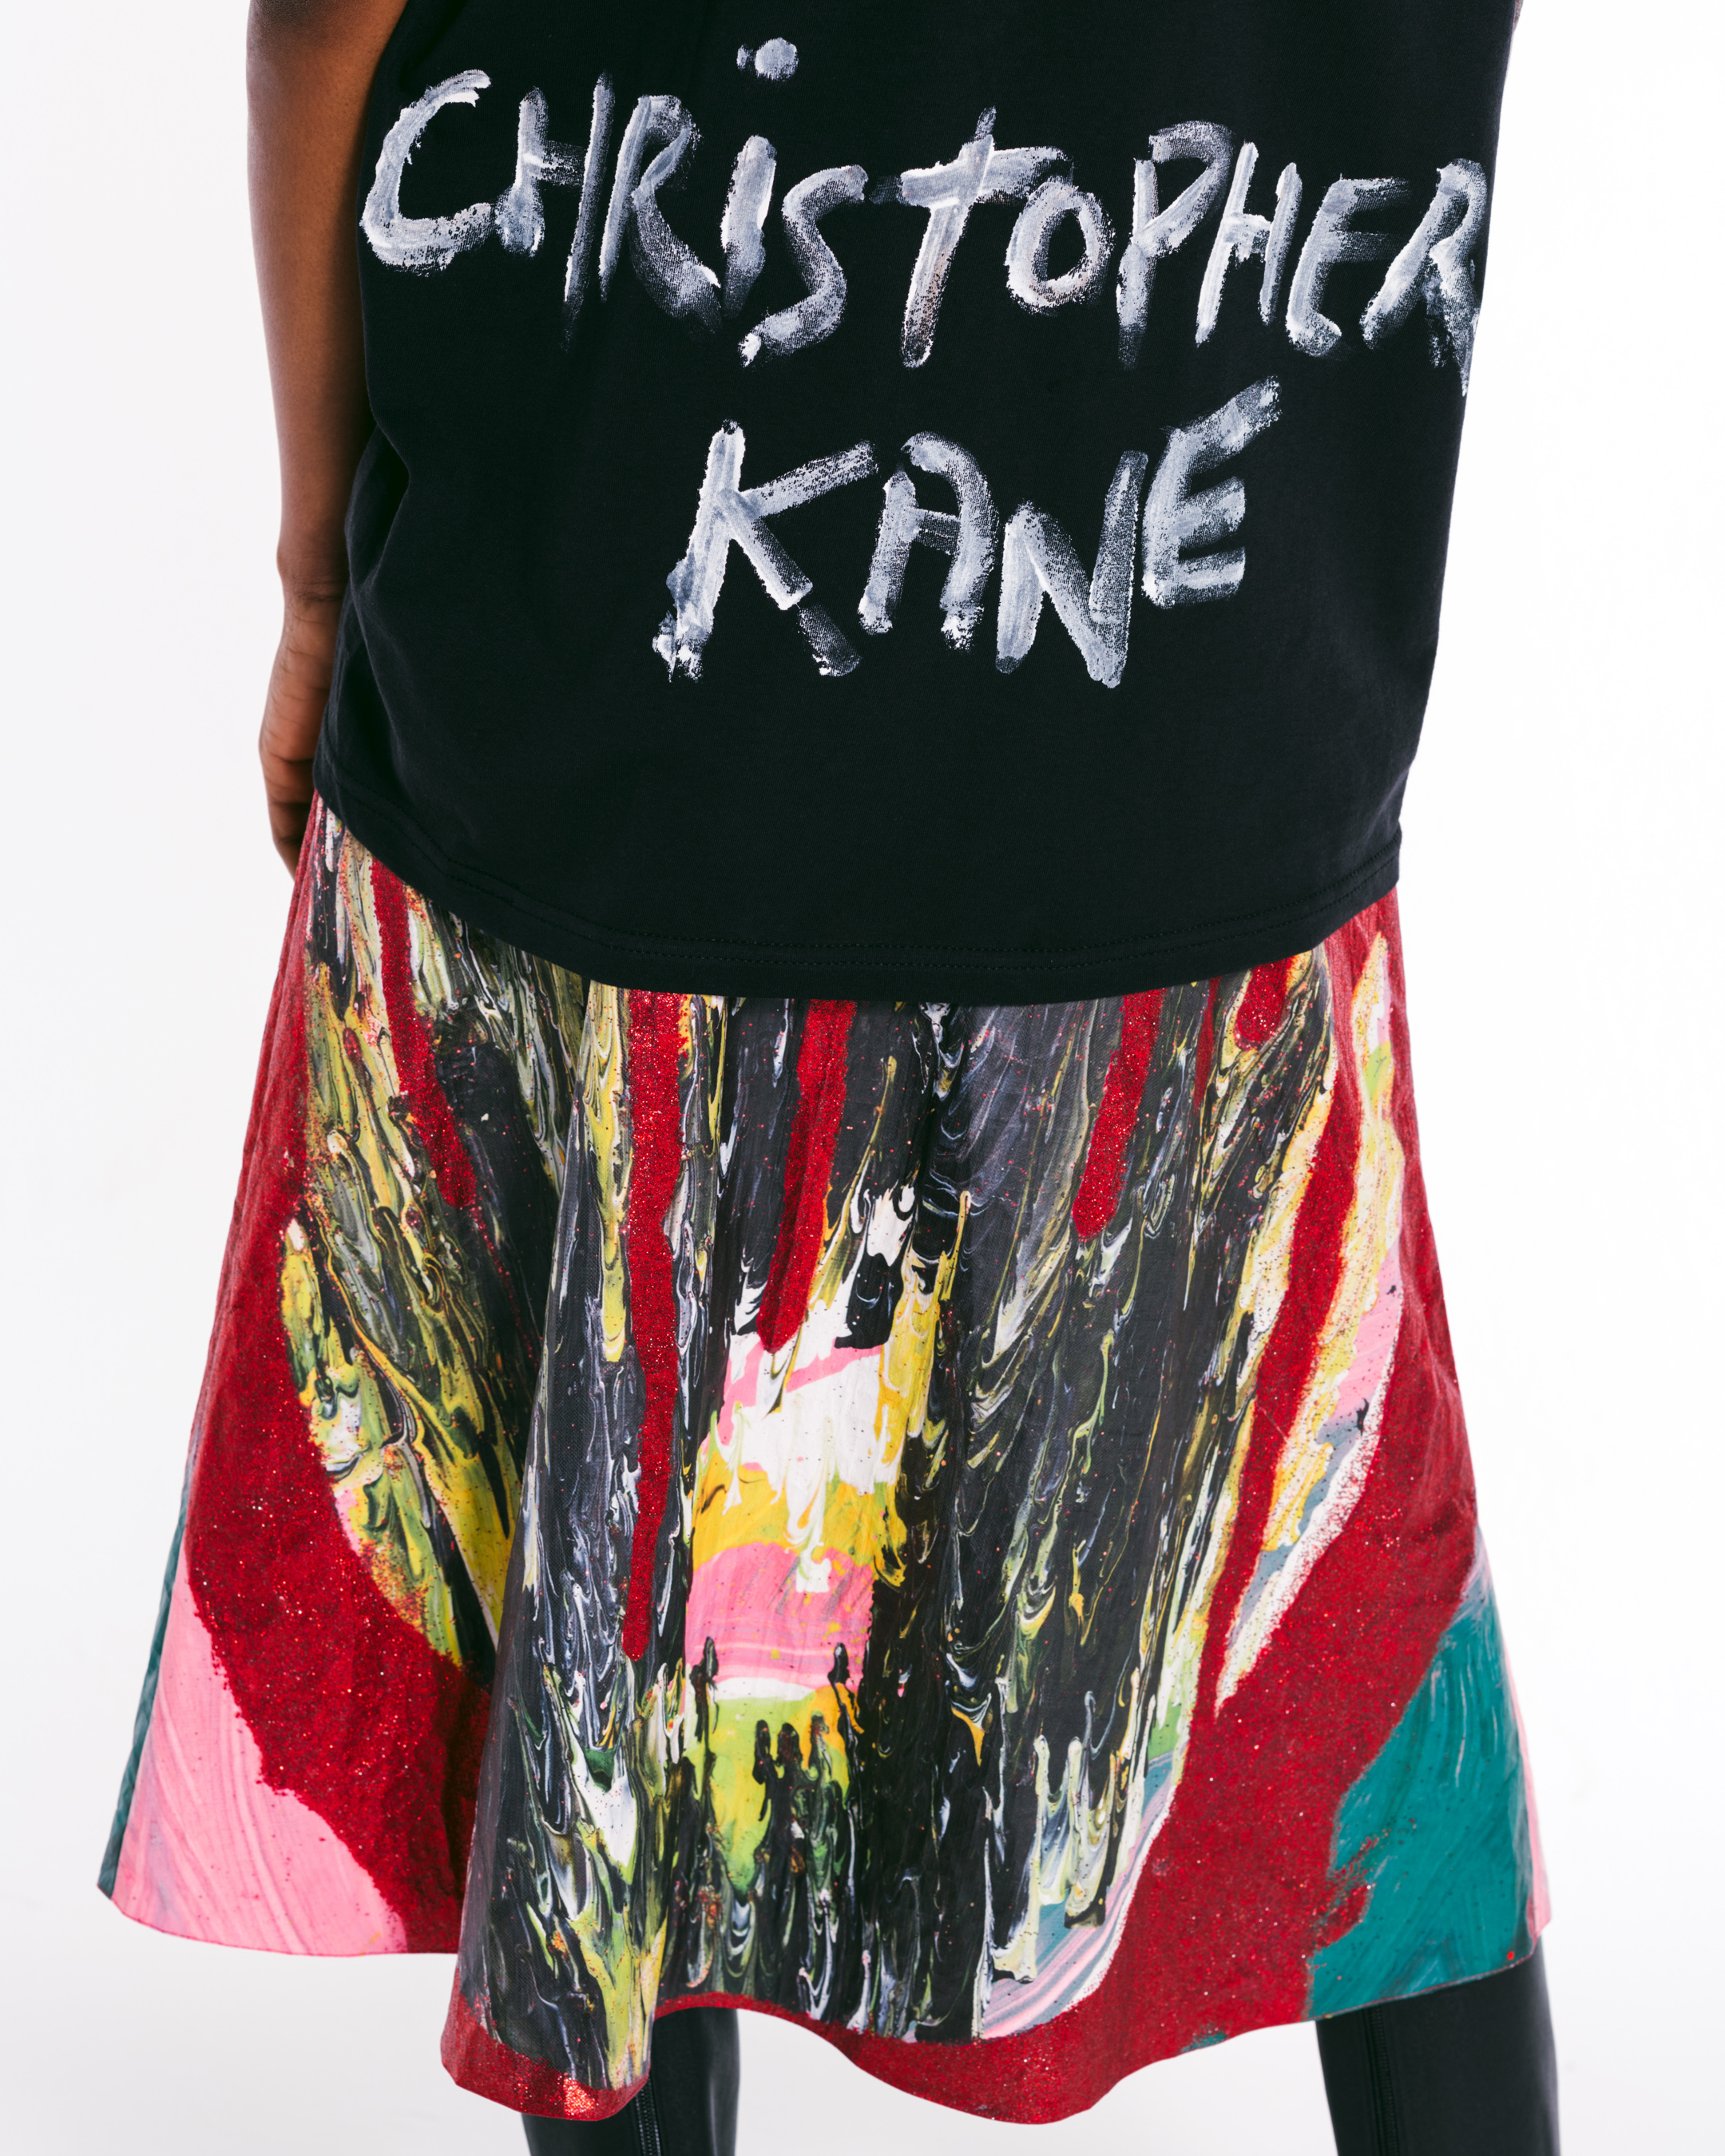 Christopher Kane Spring 2021 Fashion Show 